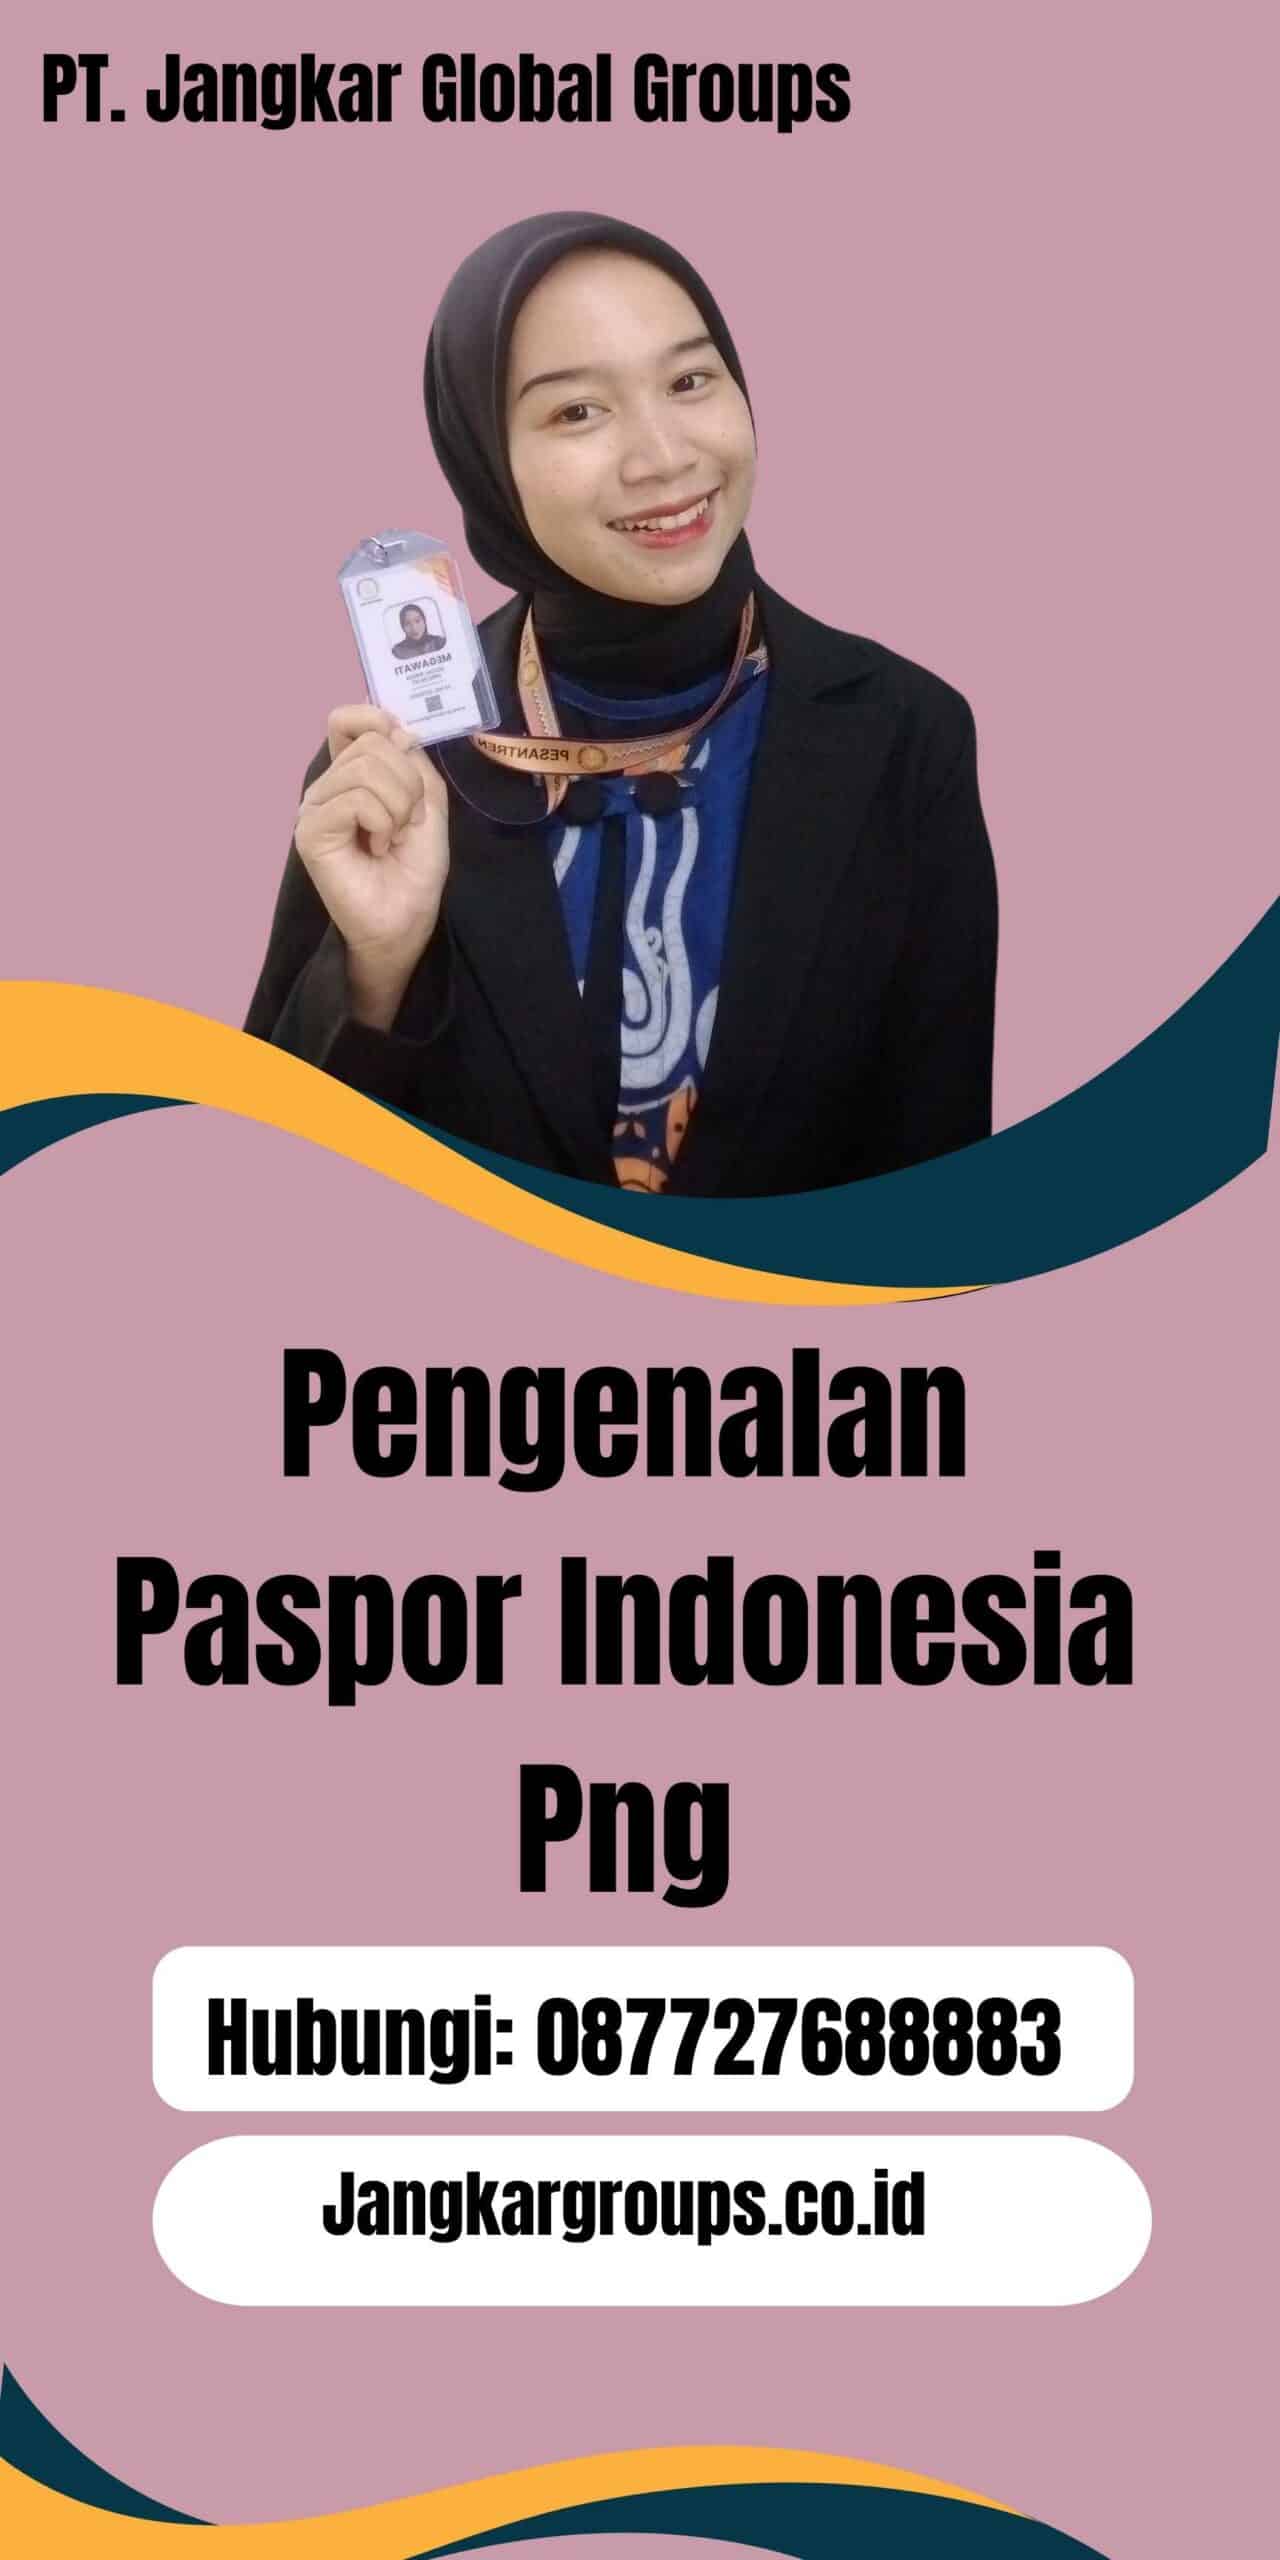 Pengenalan Paspor Indonesia Png